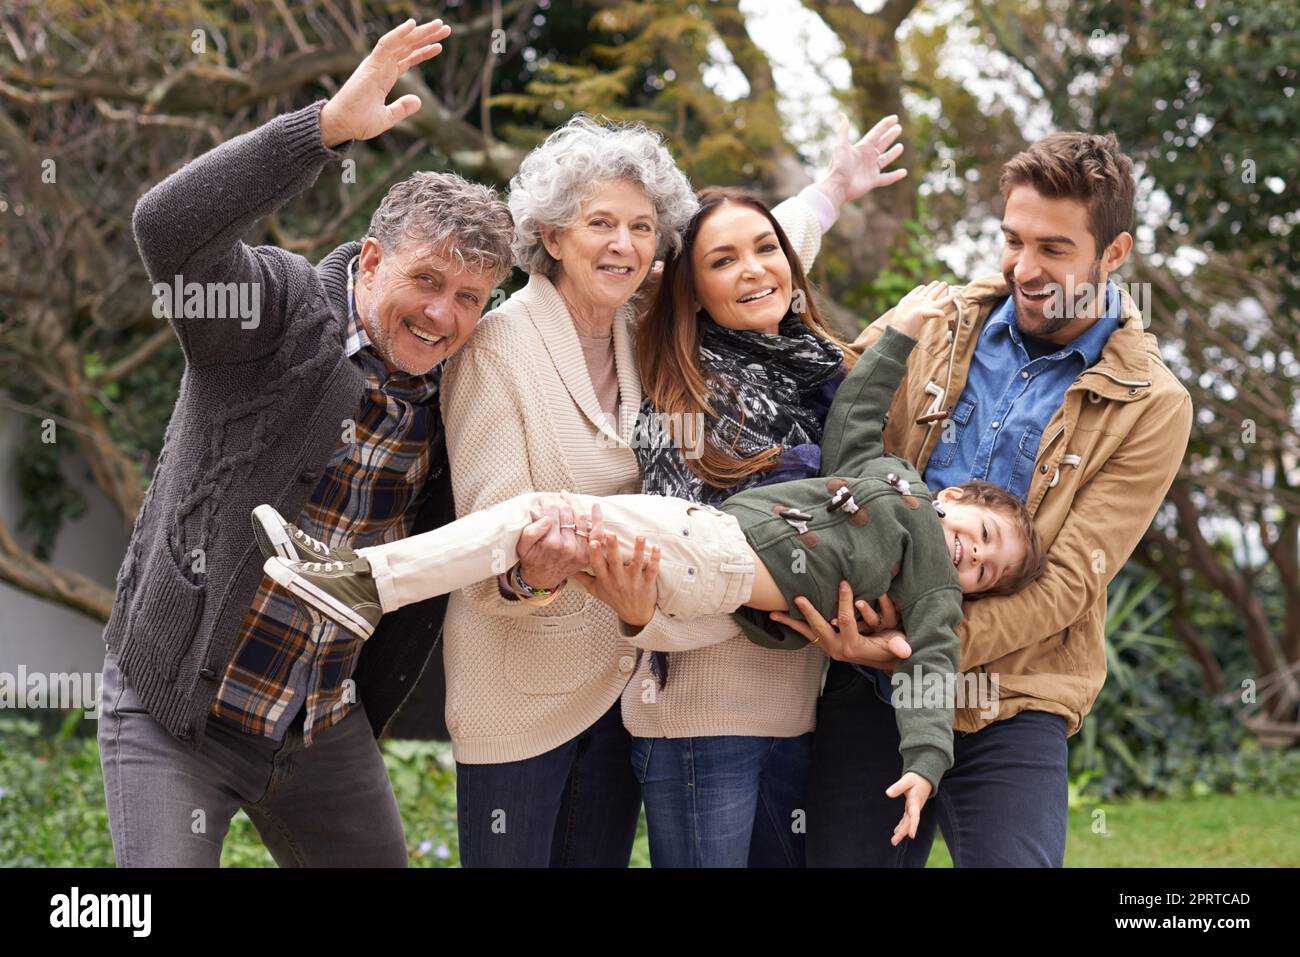 Familia sobre todo. Retrato de una familia feliz de varias generaciones que se divierte al aire libre. Foto de stock